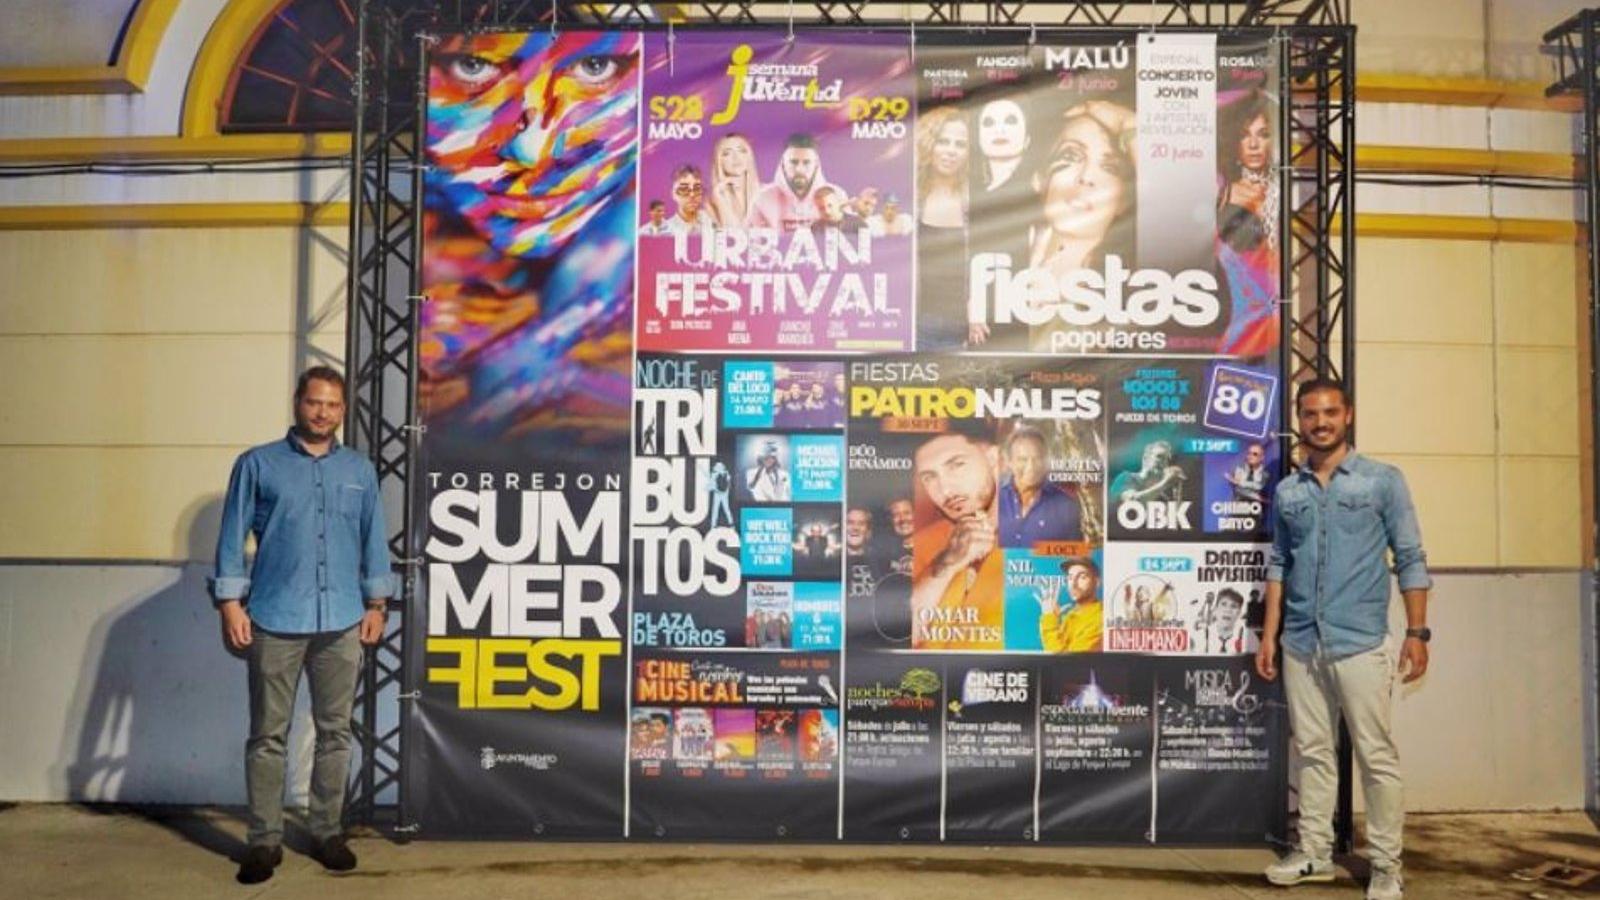 Un concierto de Malú, cine y diferentes espectáculos, entre las actividades del 'Torrejón Summer Fest'